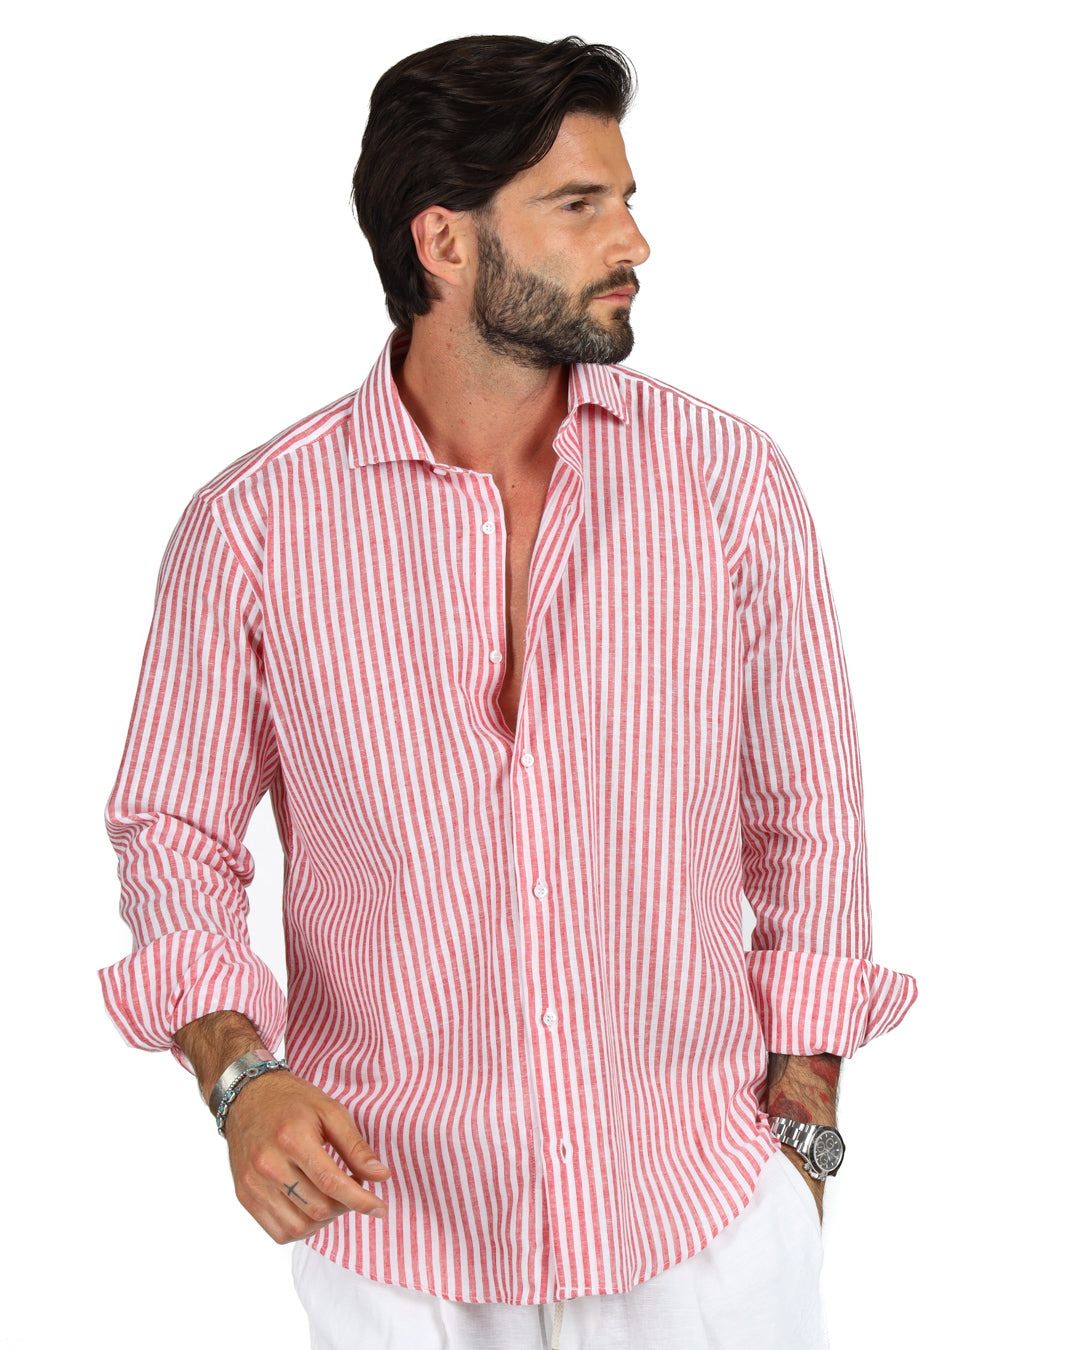 Ischia - Camicia classica righe strette rossa in lino